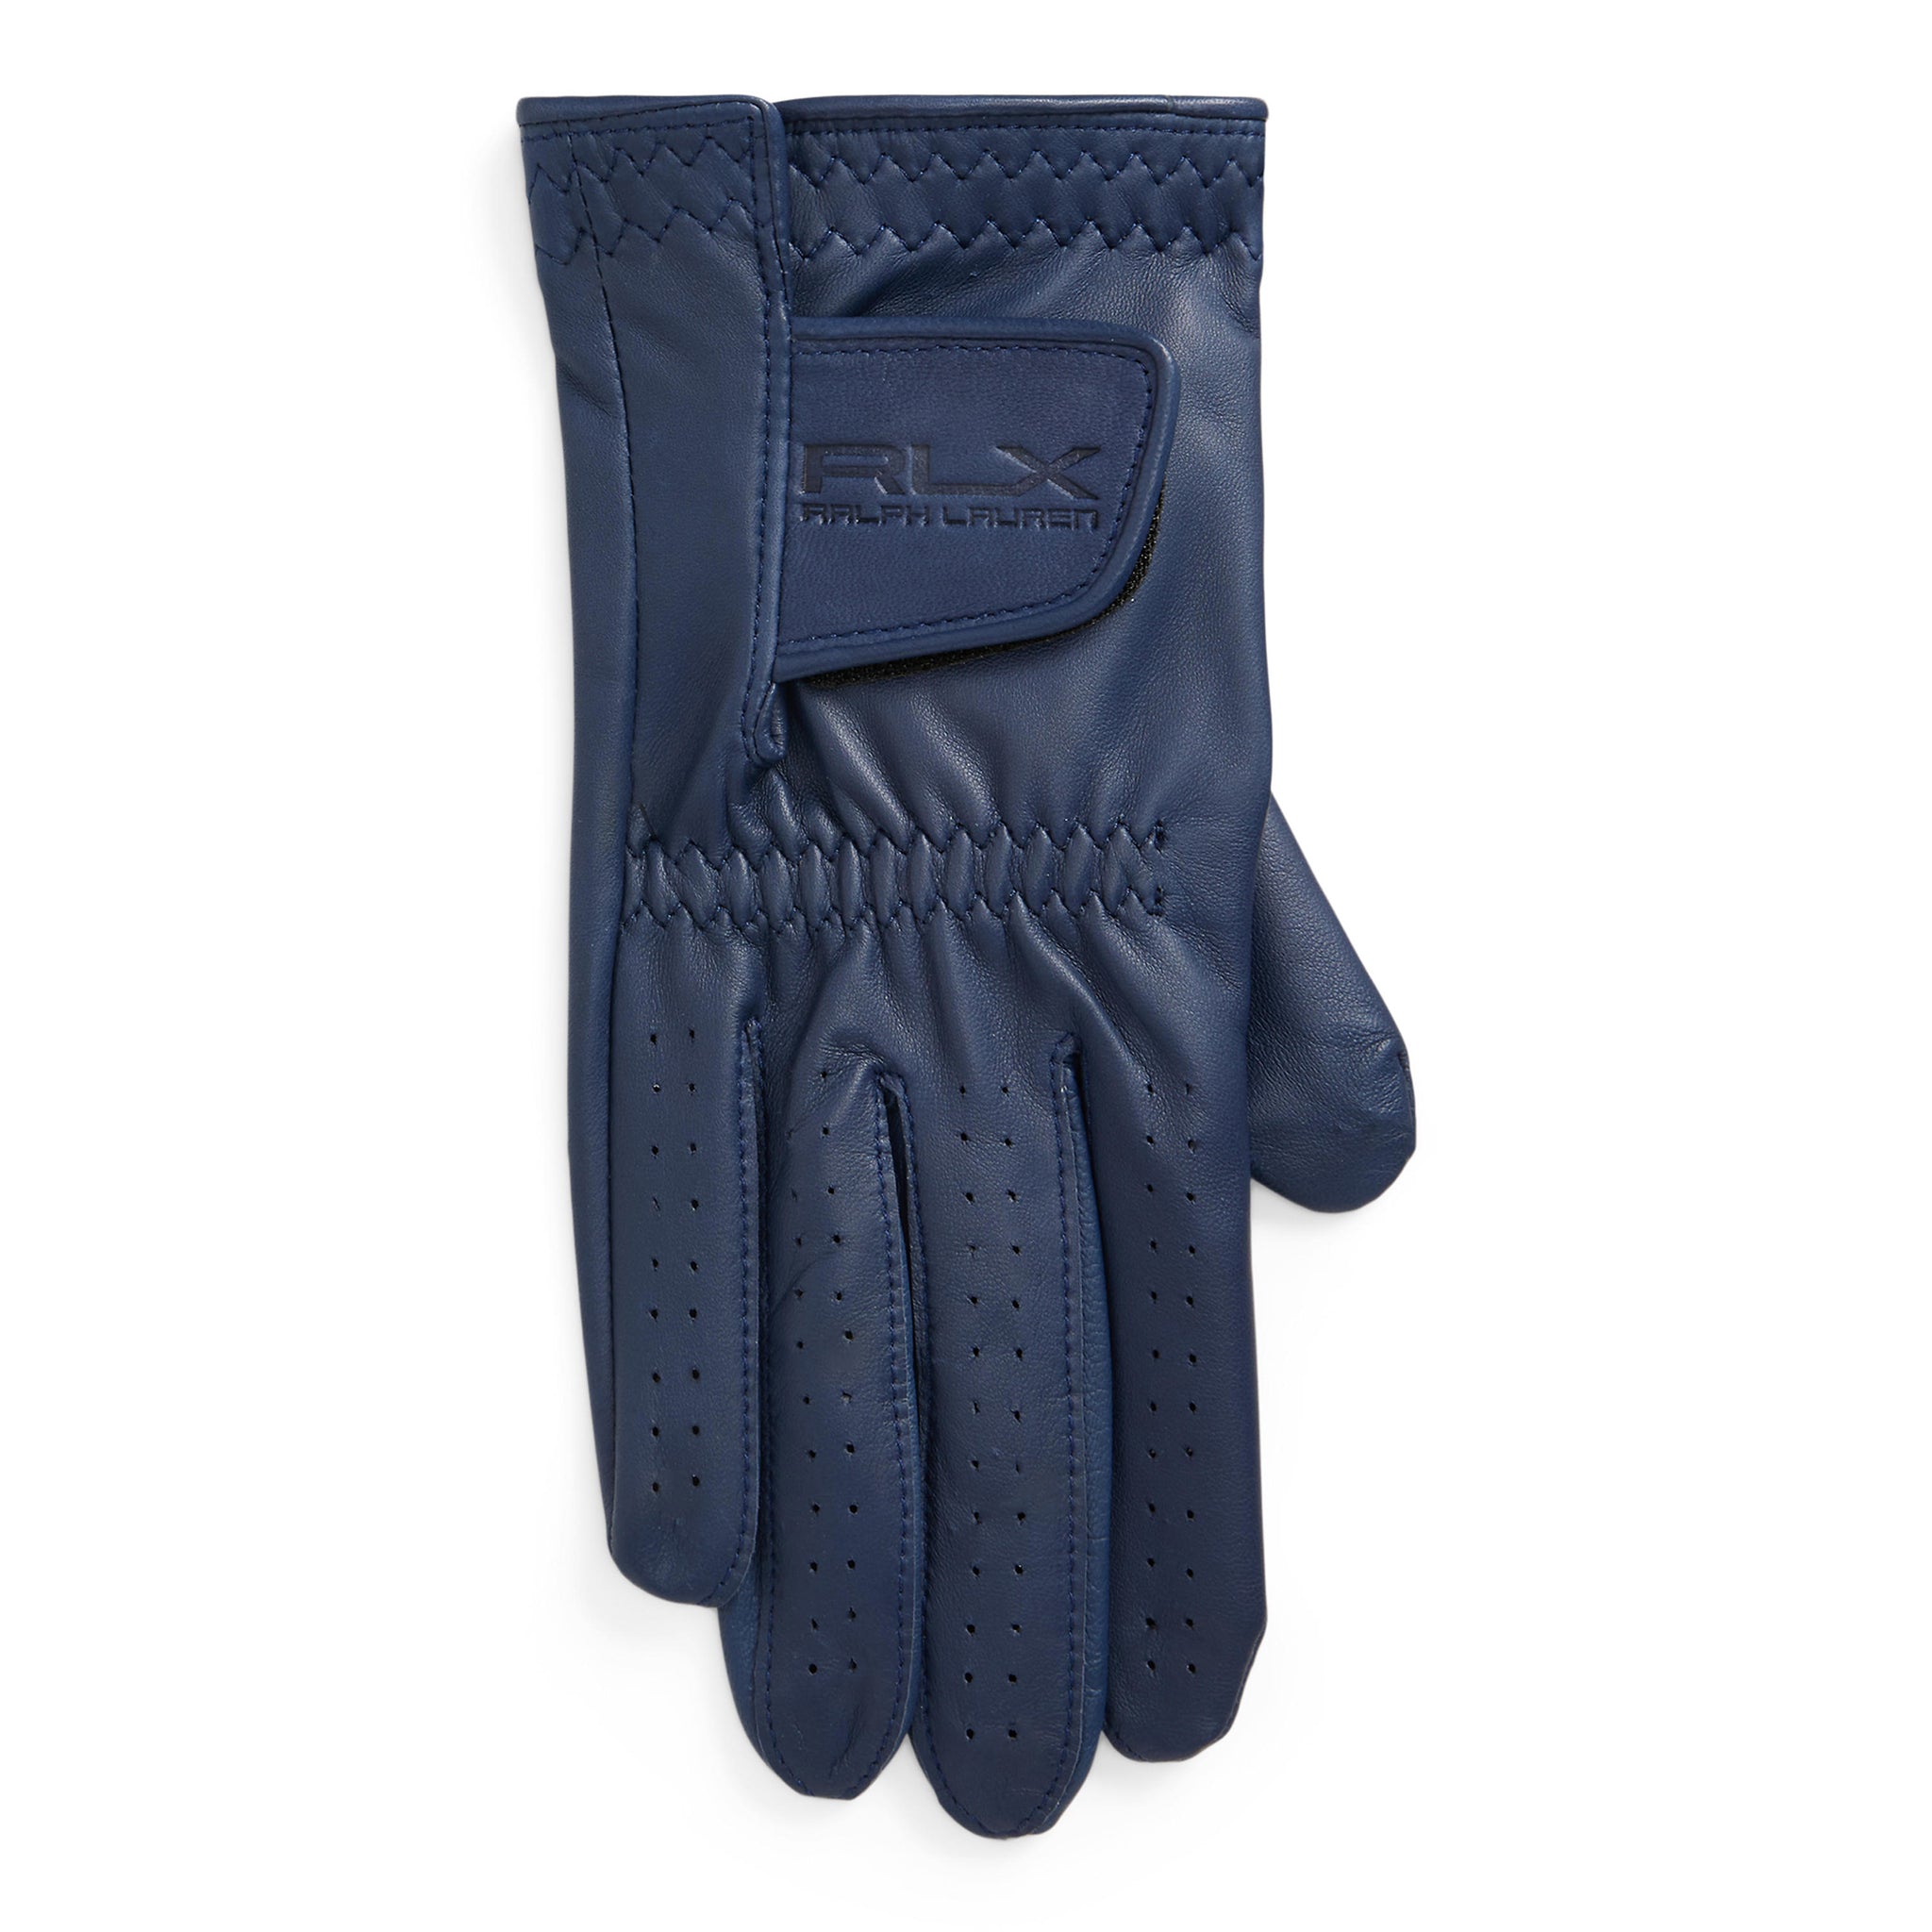 RLX Ralph Lauren Leather Golf Glove - MRH